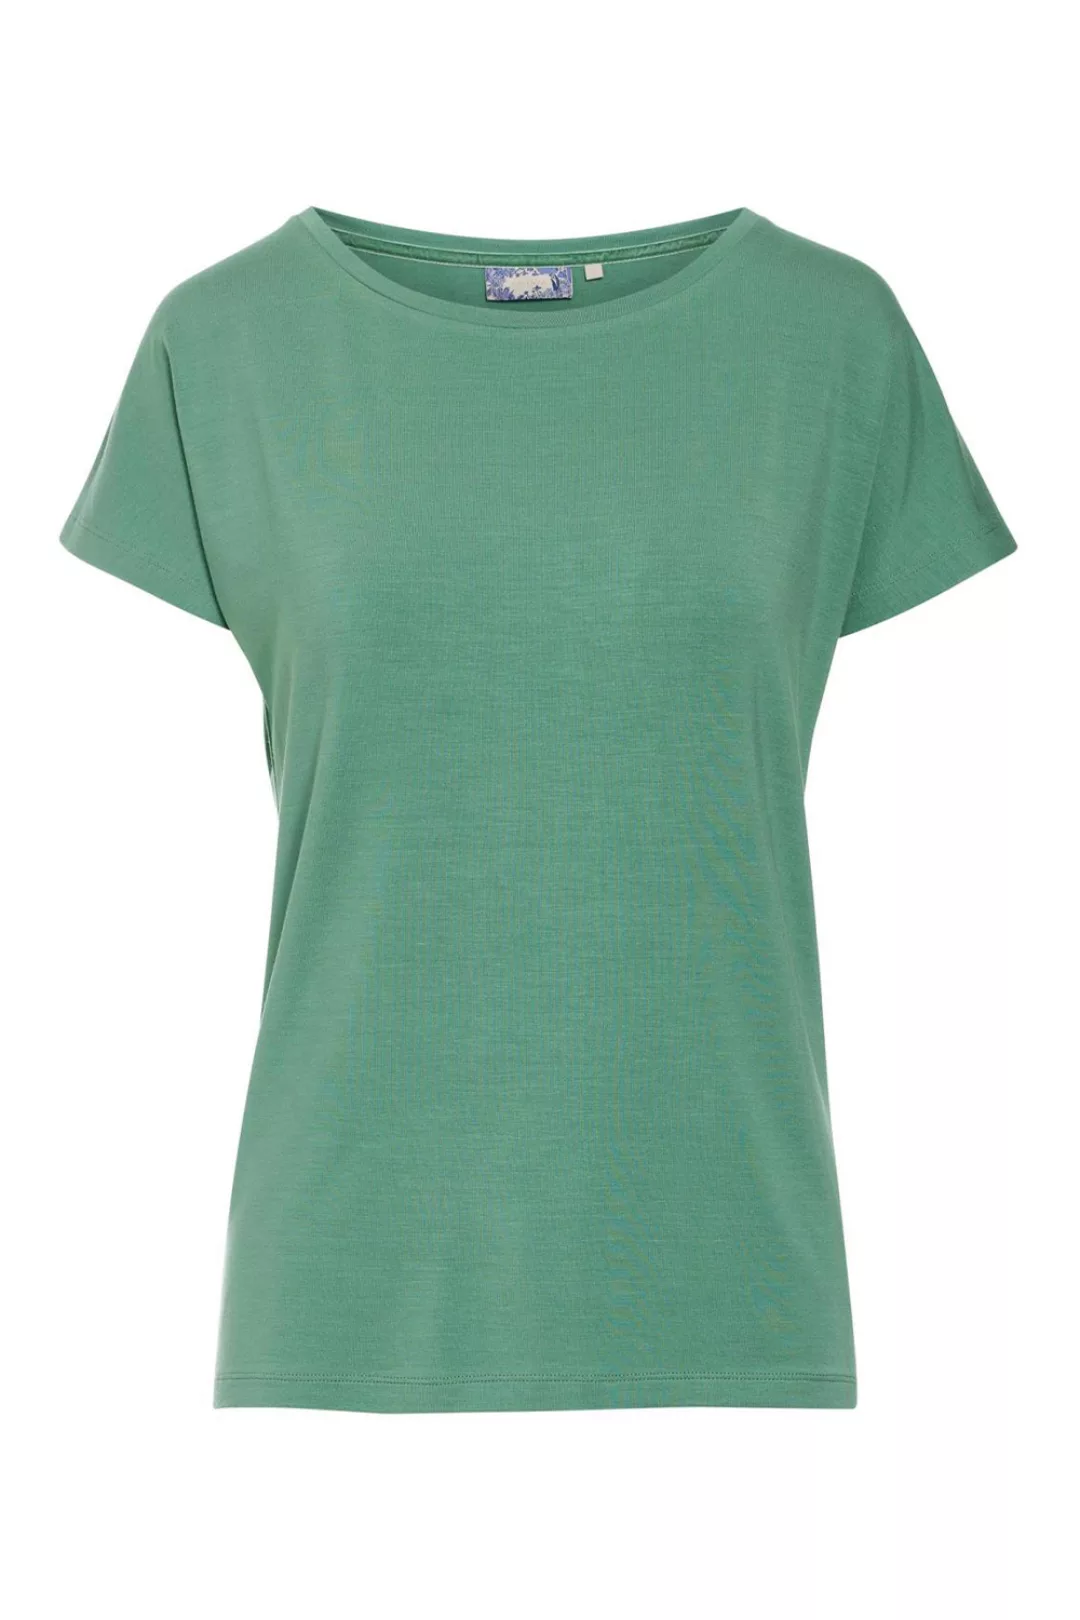 ESSENZA Ellen Uni Kurzarmshirt Loungewear 3 44 grün günstig online kaufen